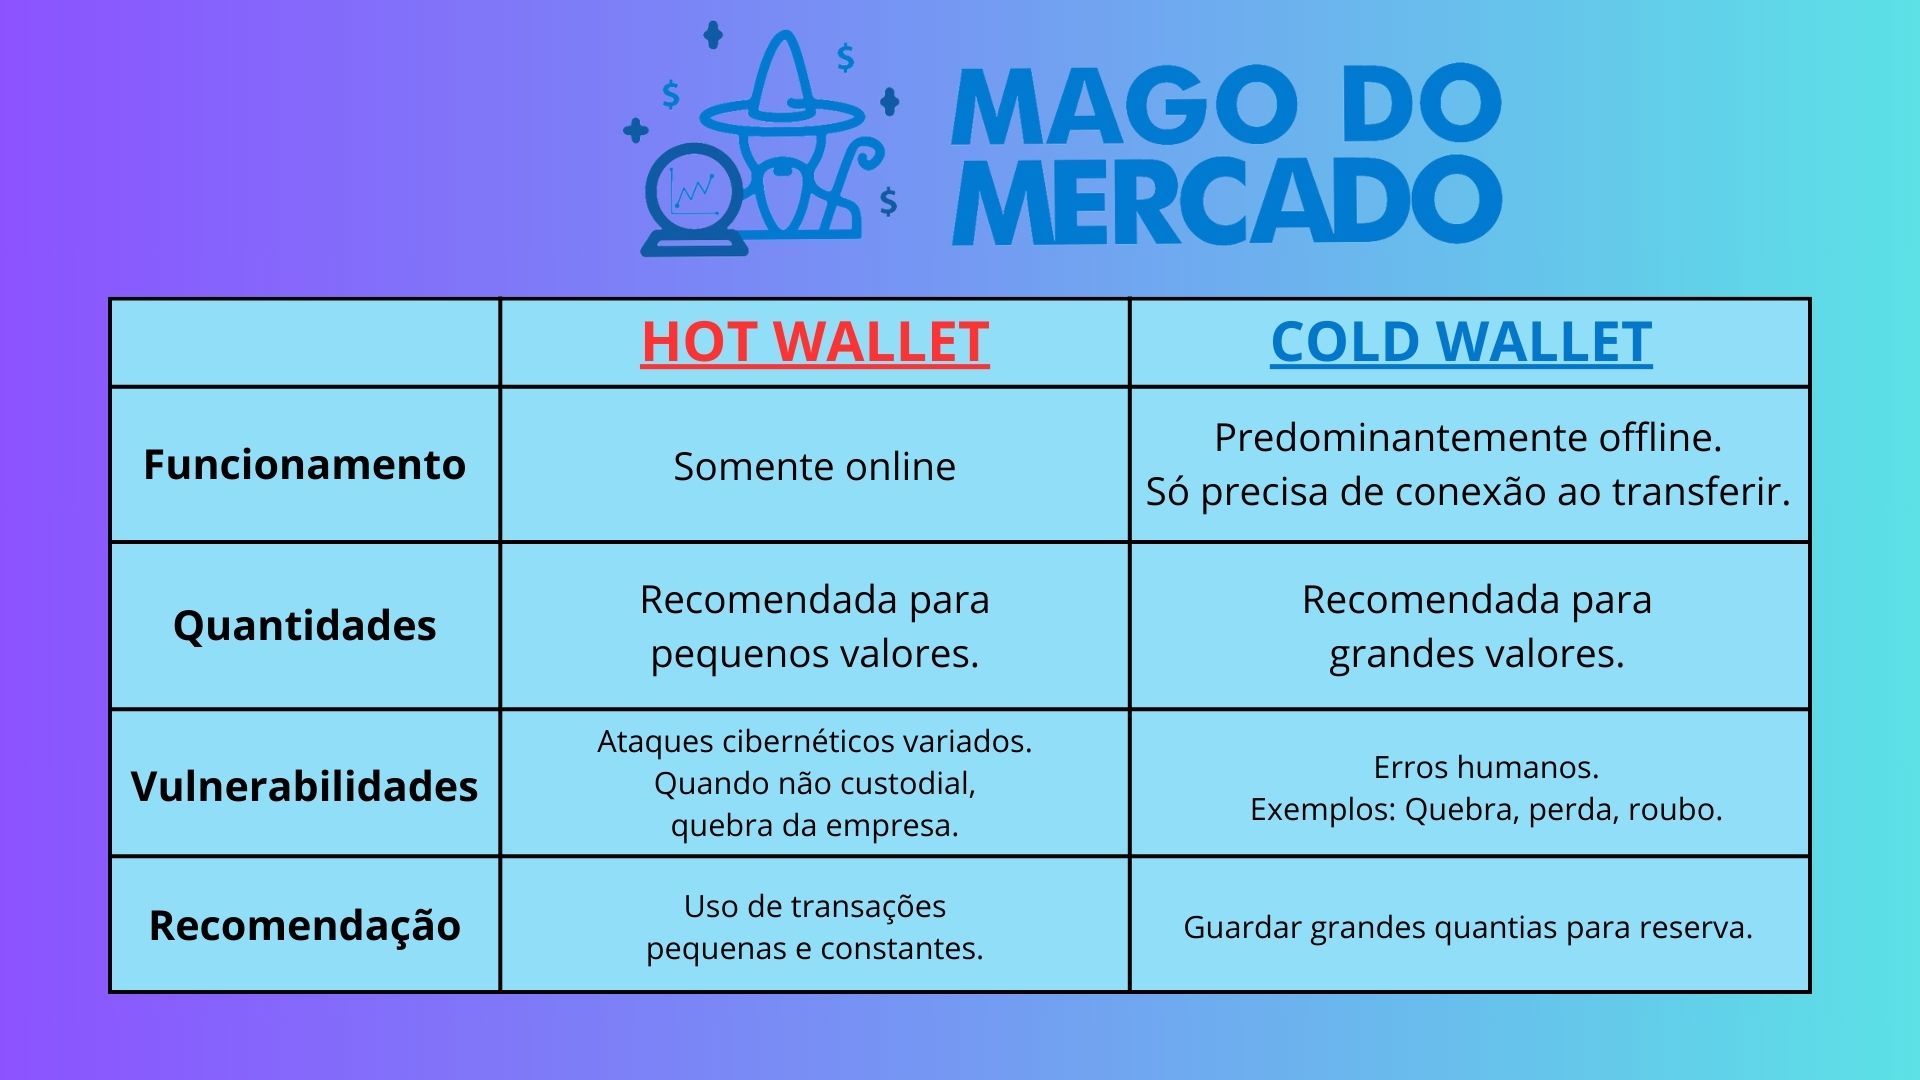 Vantagens e desvantagens cold wallet x hot wallet